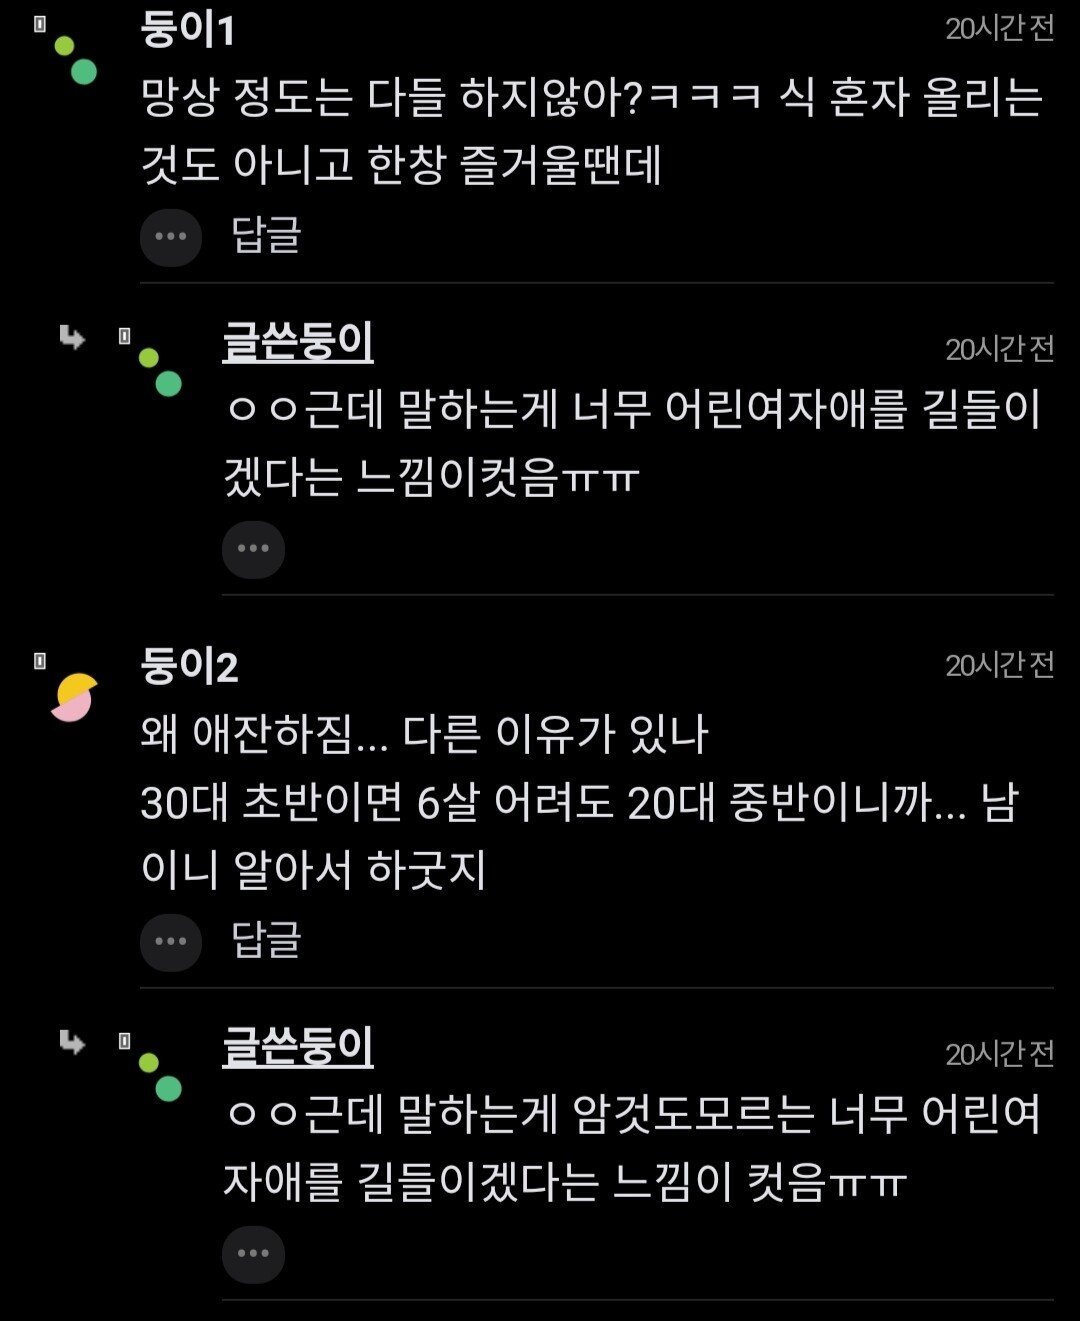 ""6살 연하녀랑 사귄다고 신나하네..."".jpg